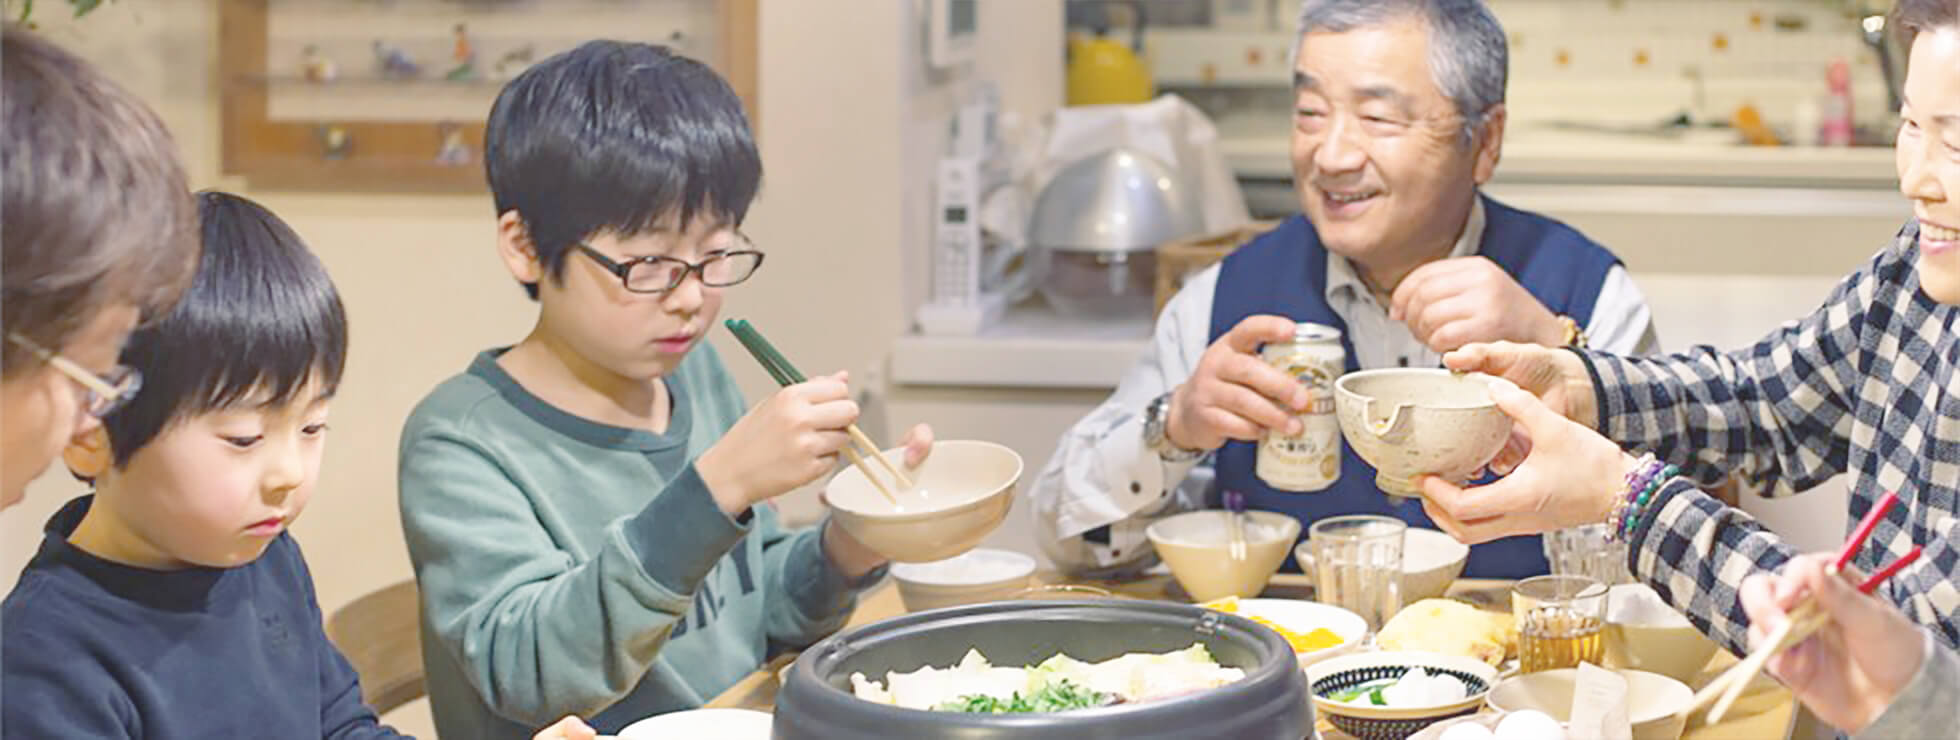 「日本の食・食文化」を支える<br>
地域の事業者をサポートします